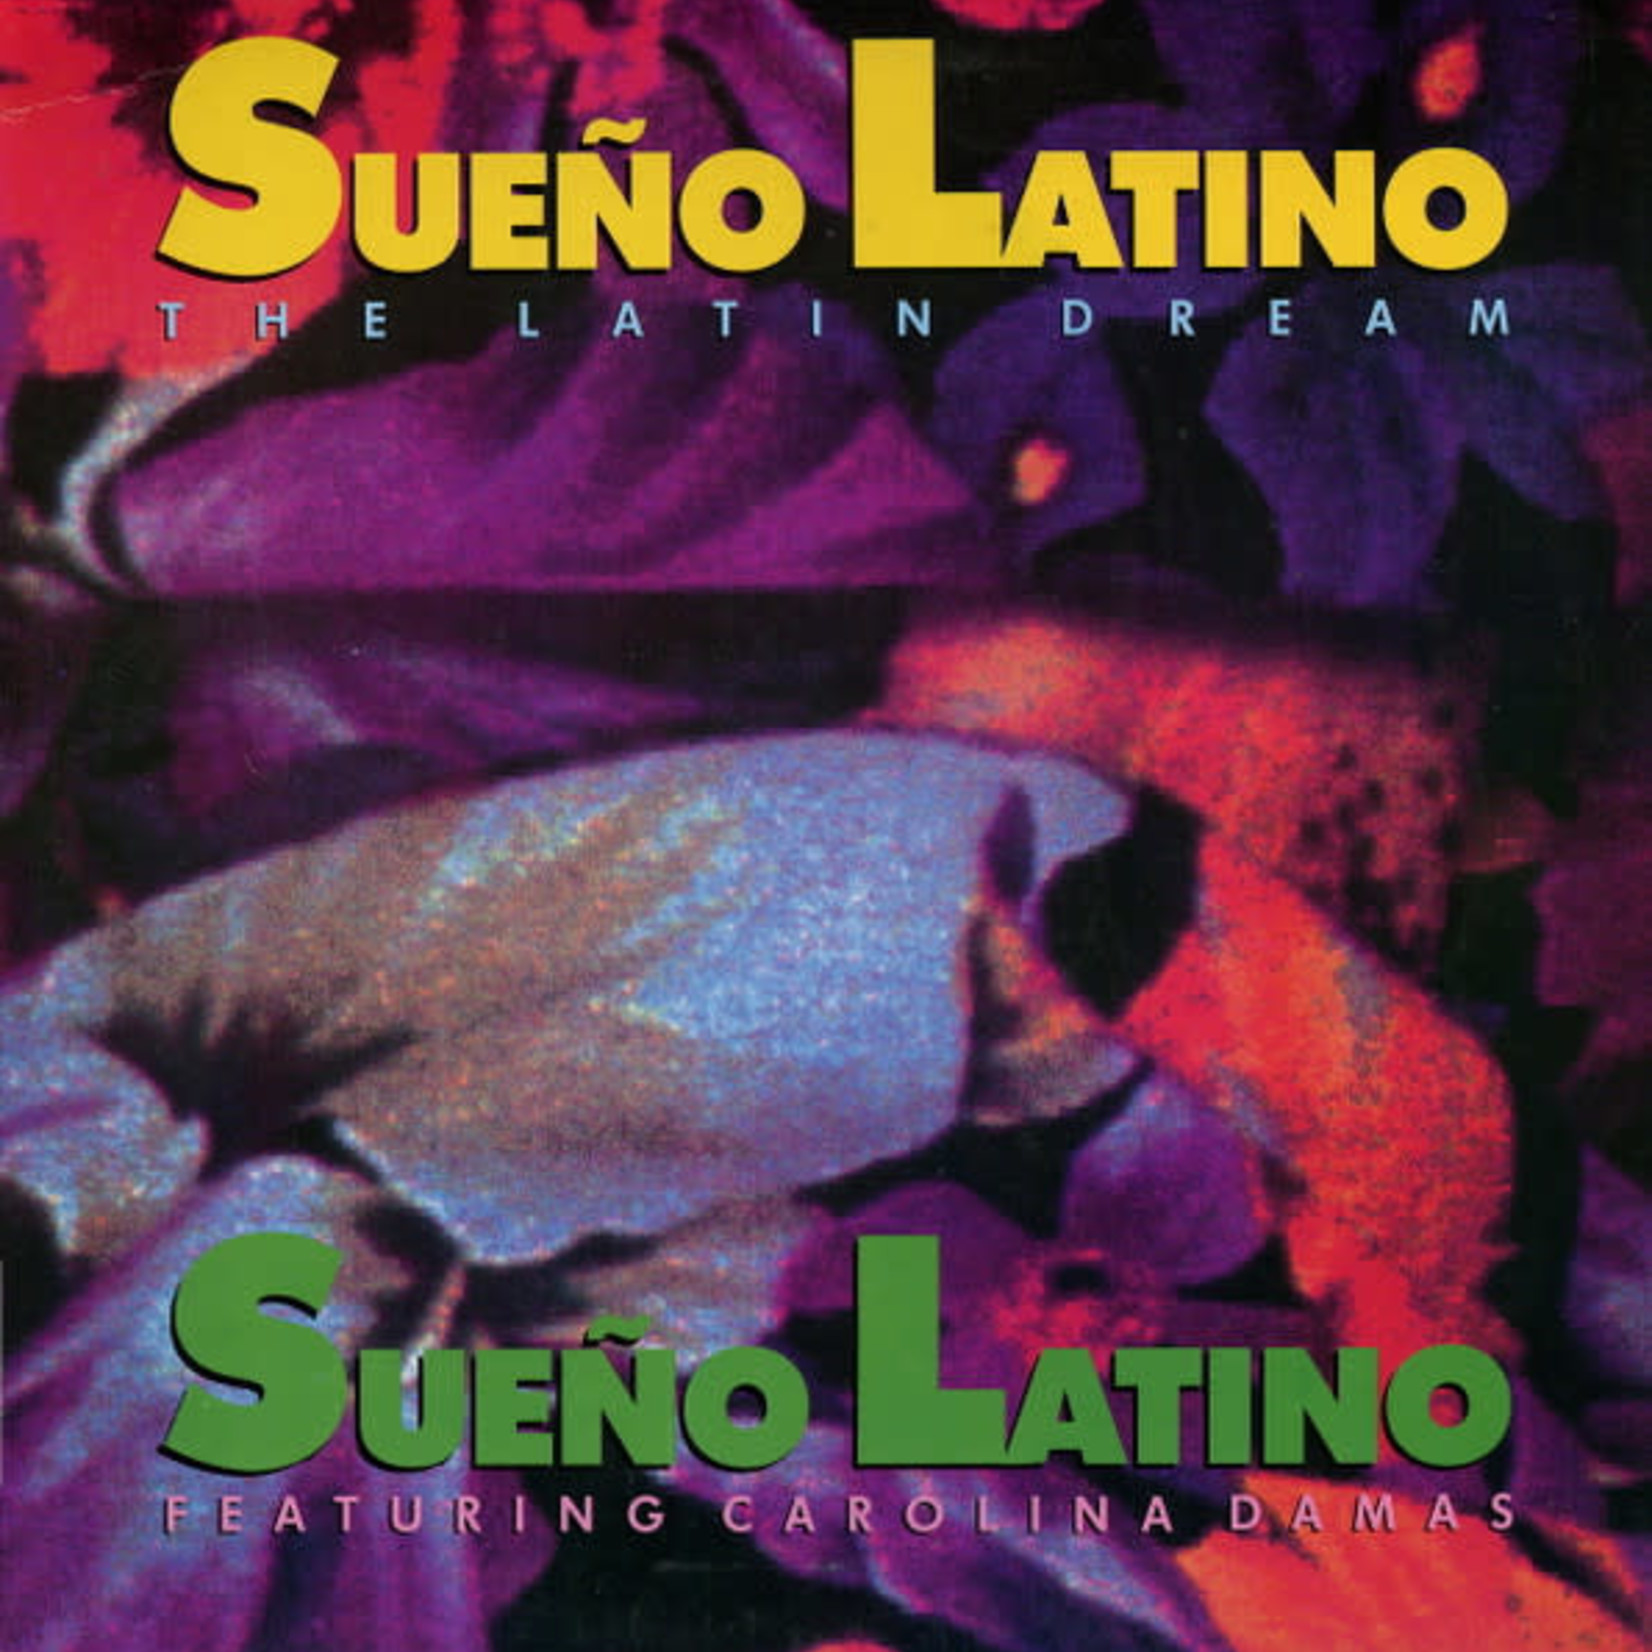 Sueño Latino Featuring Carolina Damas – Sueño Latino - The Latin Dream